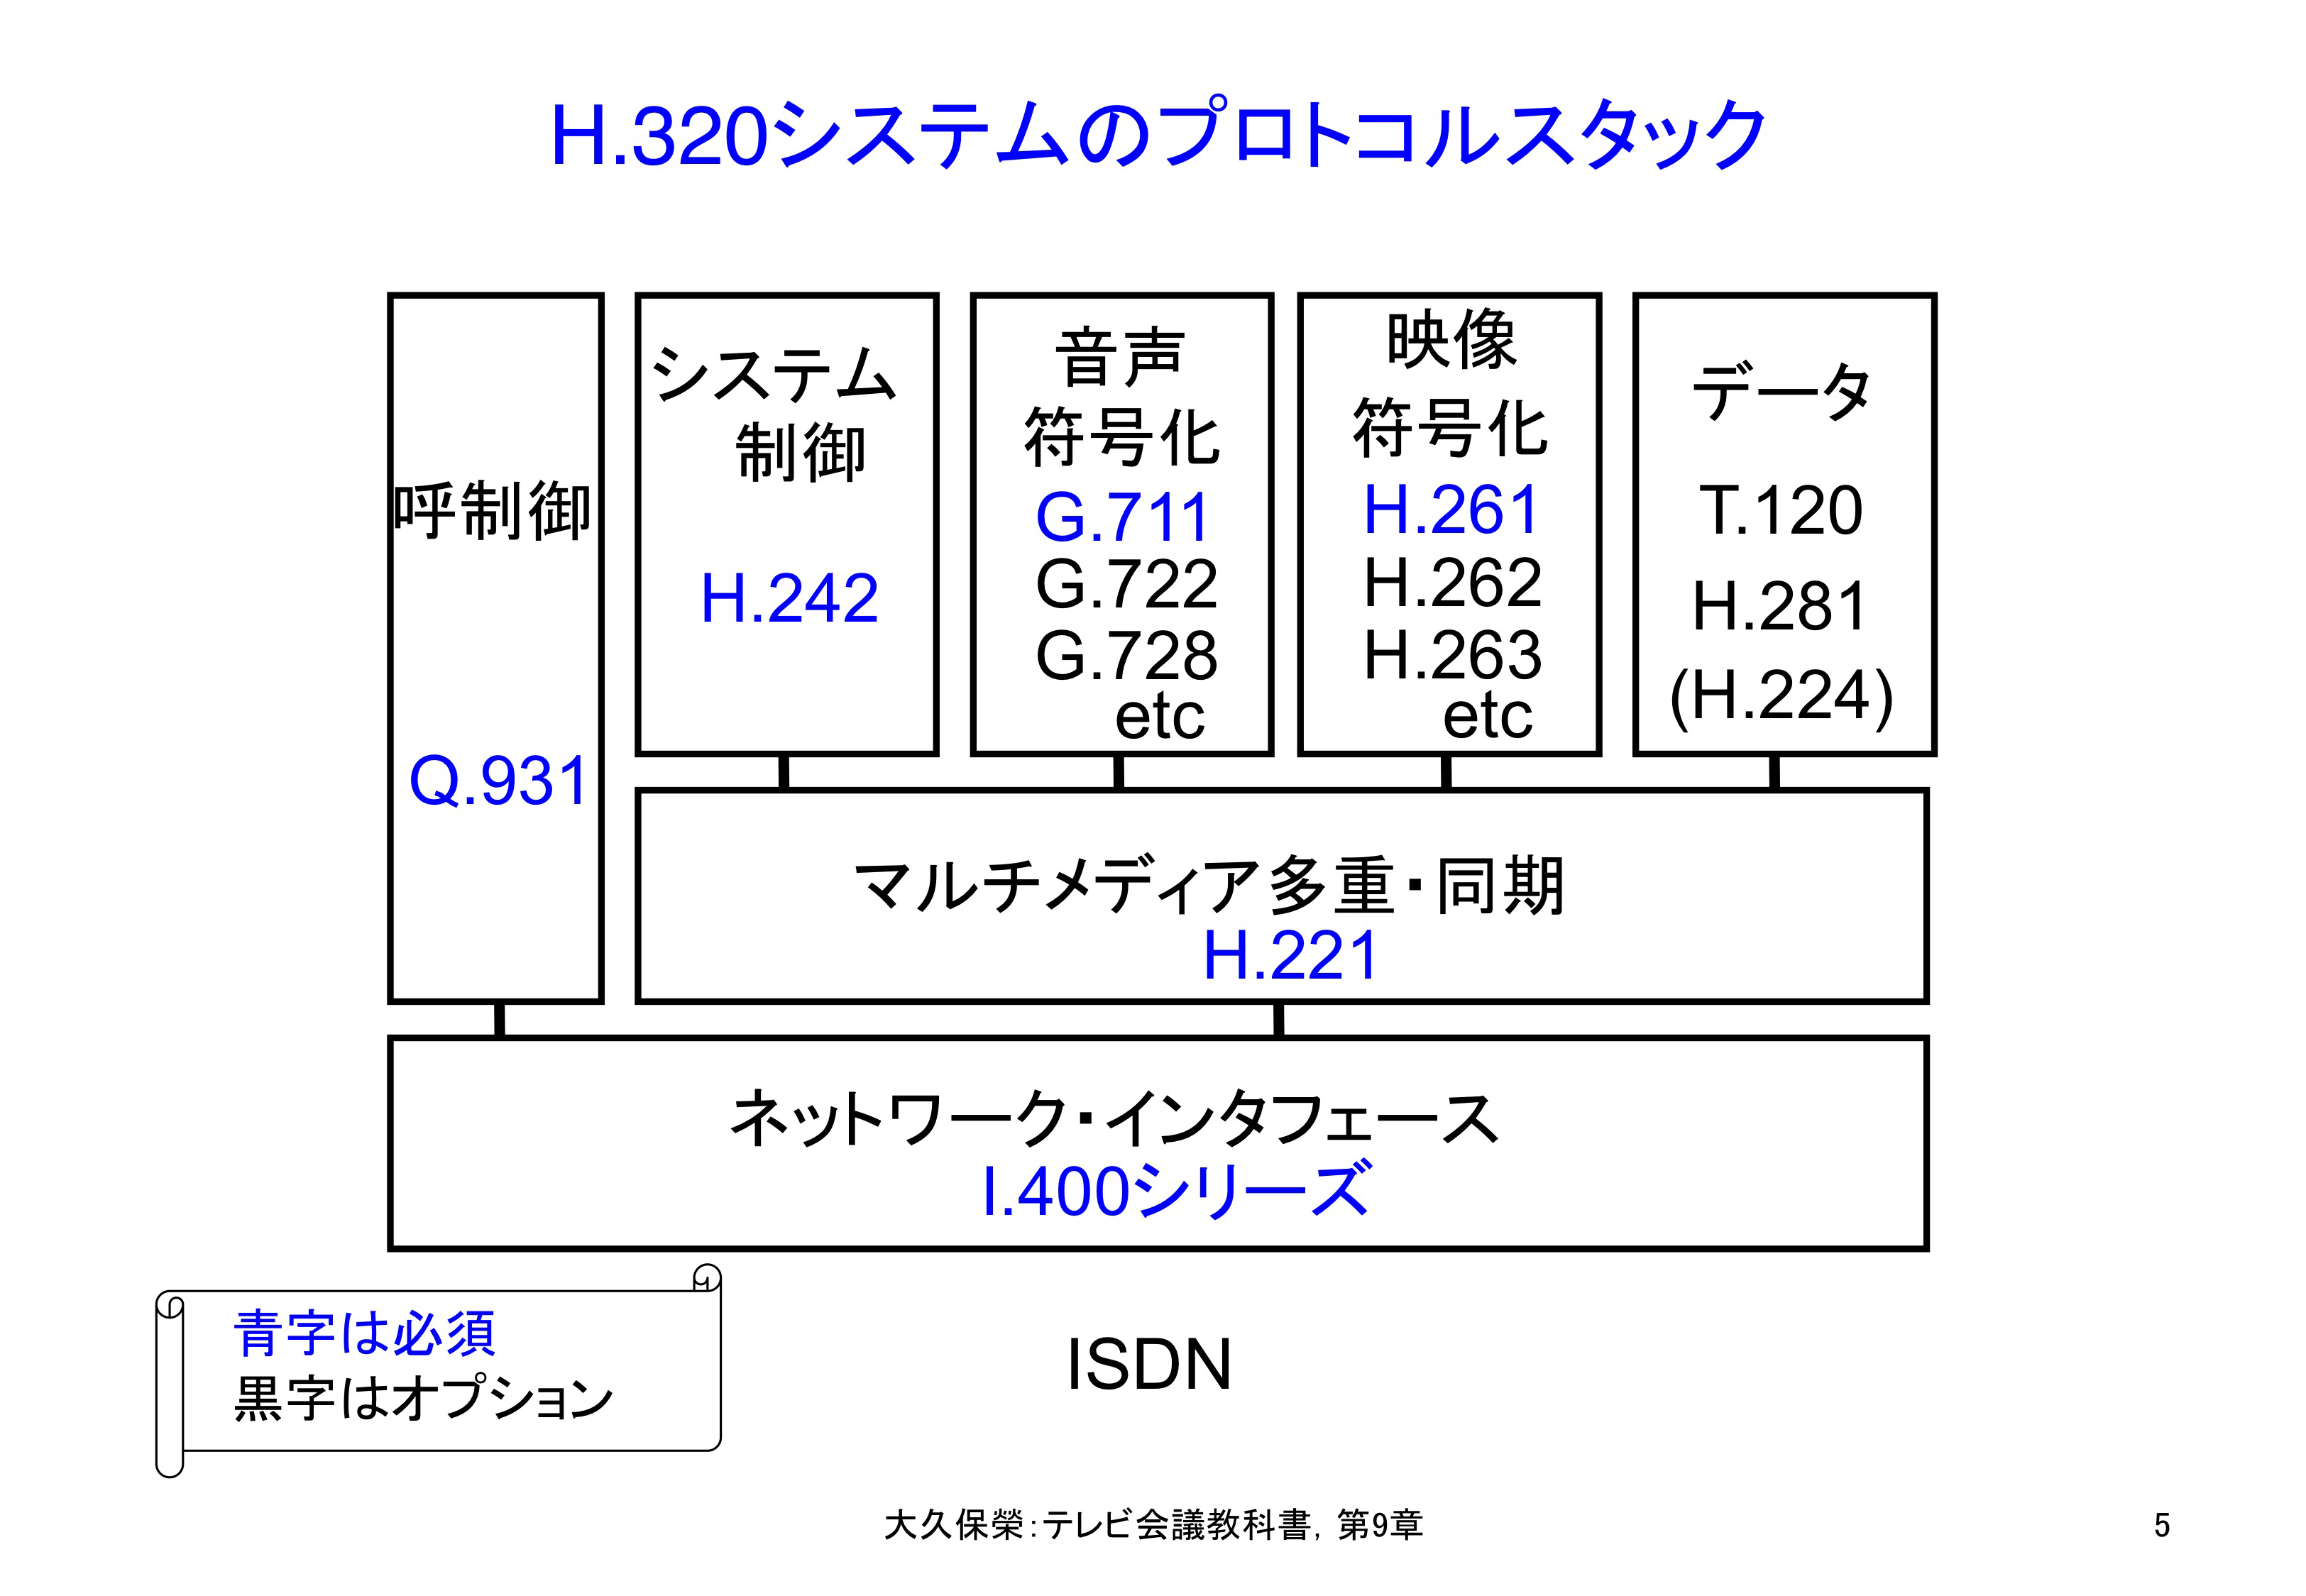 図9-5 H.320システムのプロトコルスタック